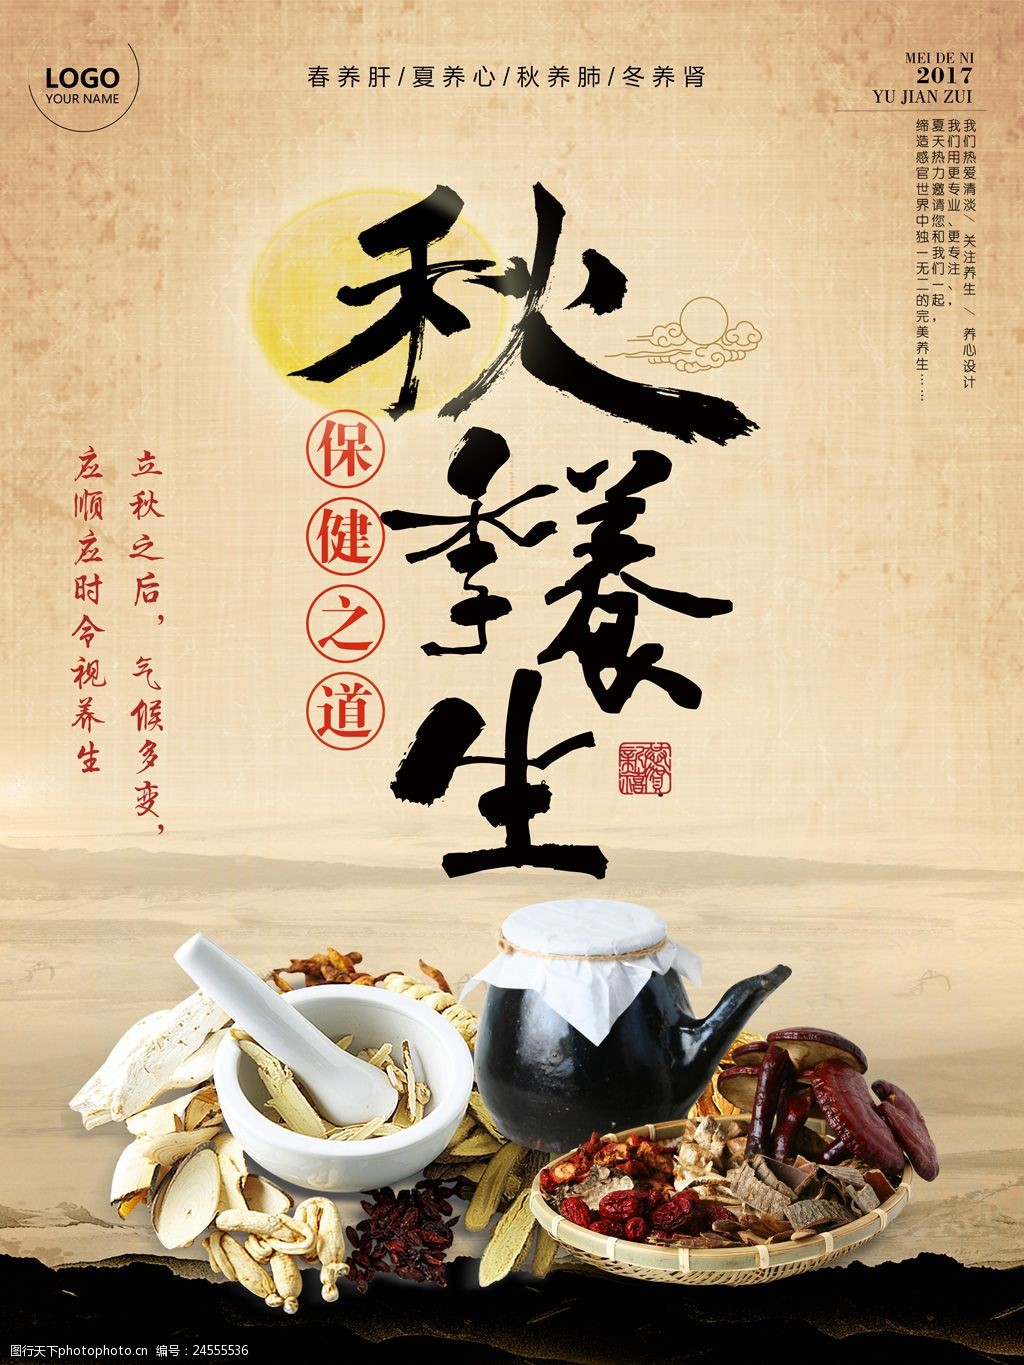 中国风养生馆秋季养生宣传海报设计